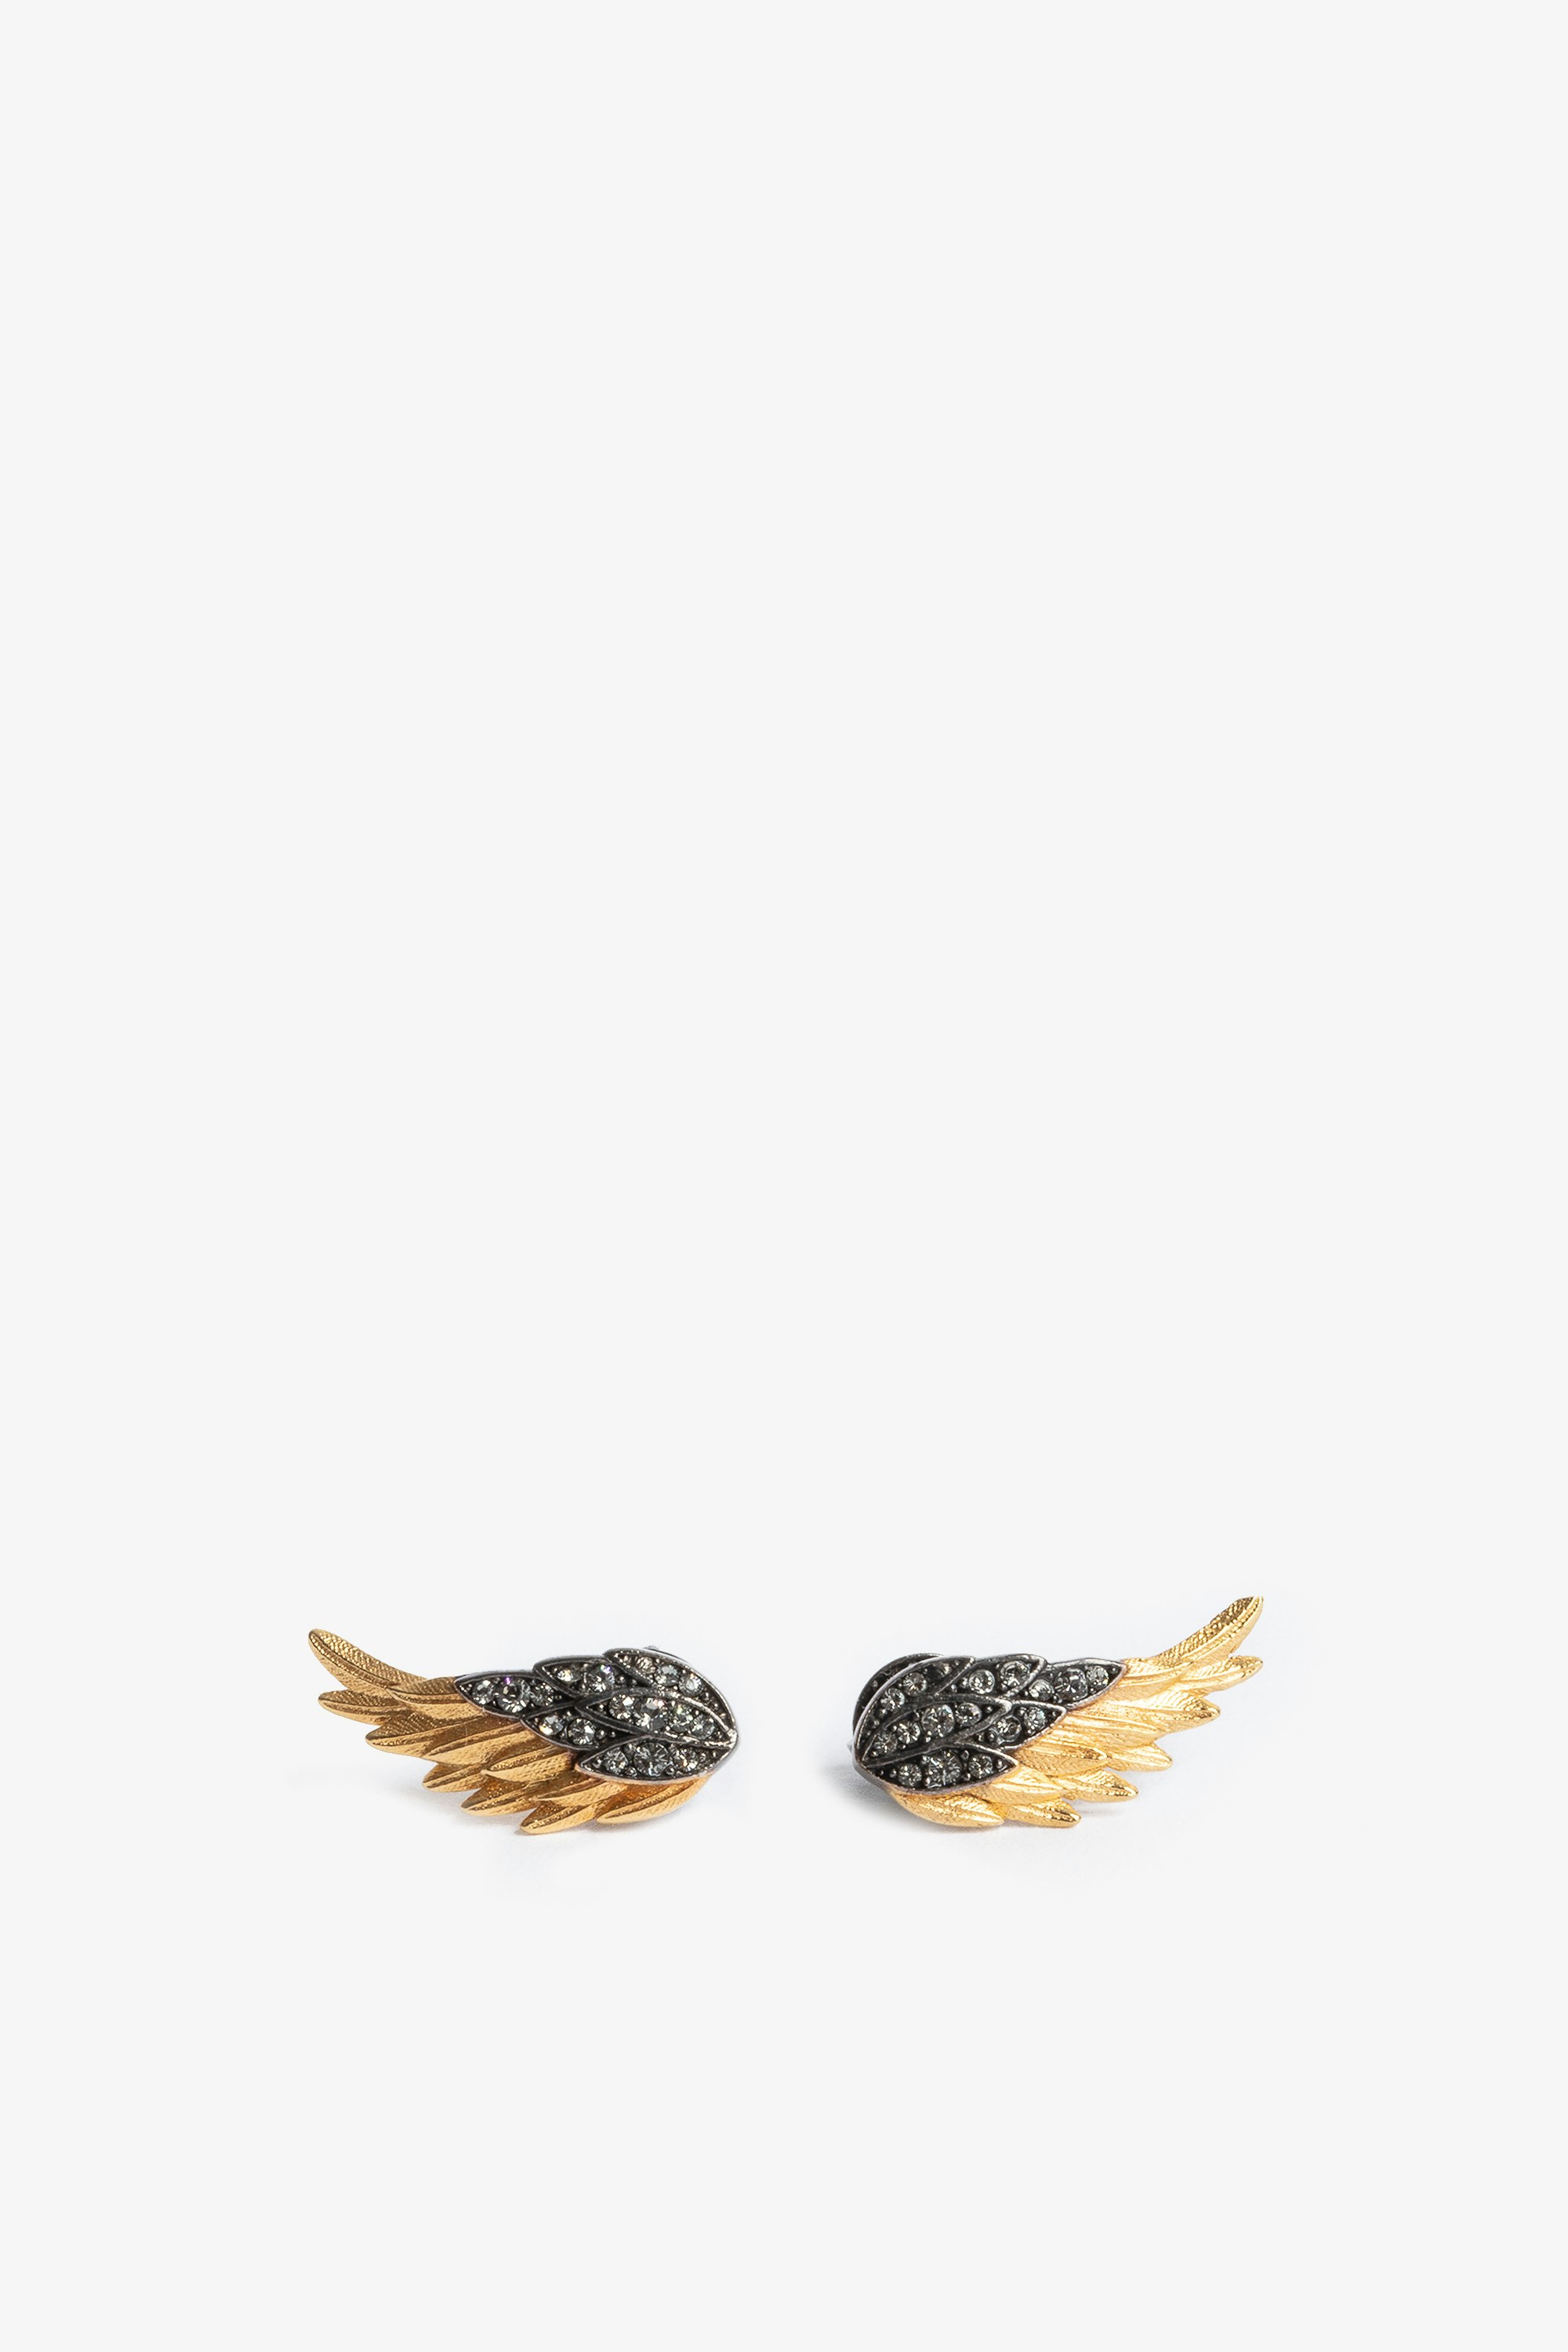 Ohrringe Rock Feather Damenohrringe in Flügelform aus geschwärztem und goldfarbenem, mit Kristallen besetztem Messing 